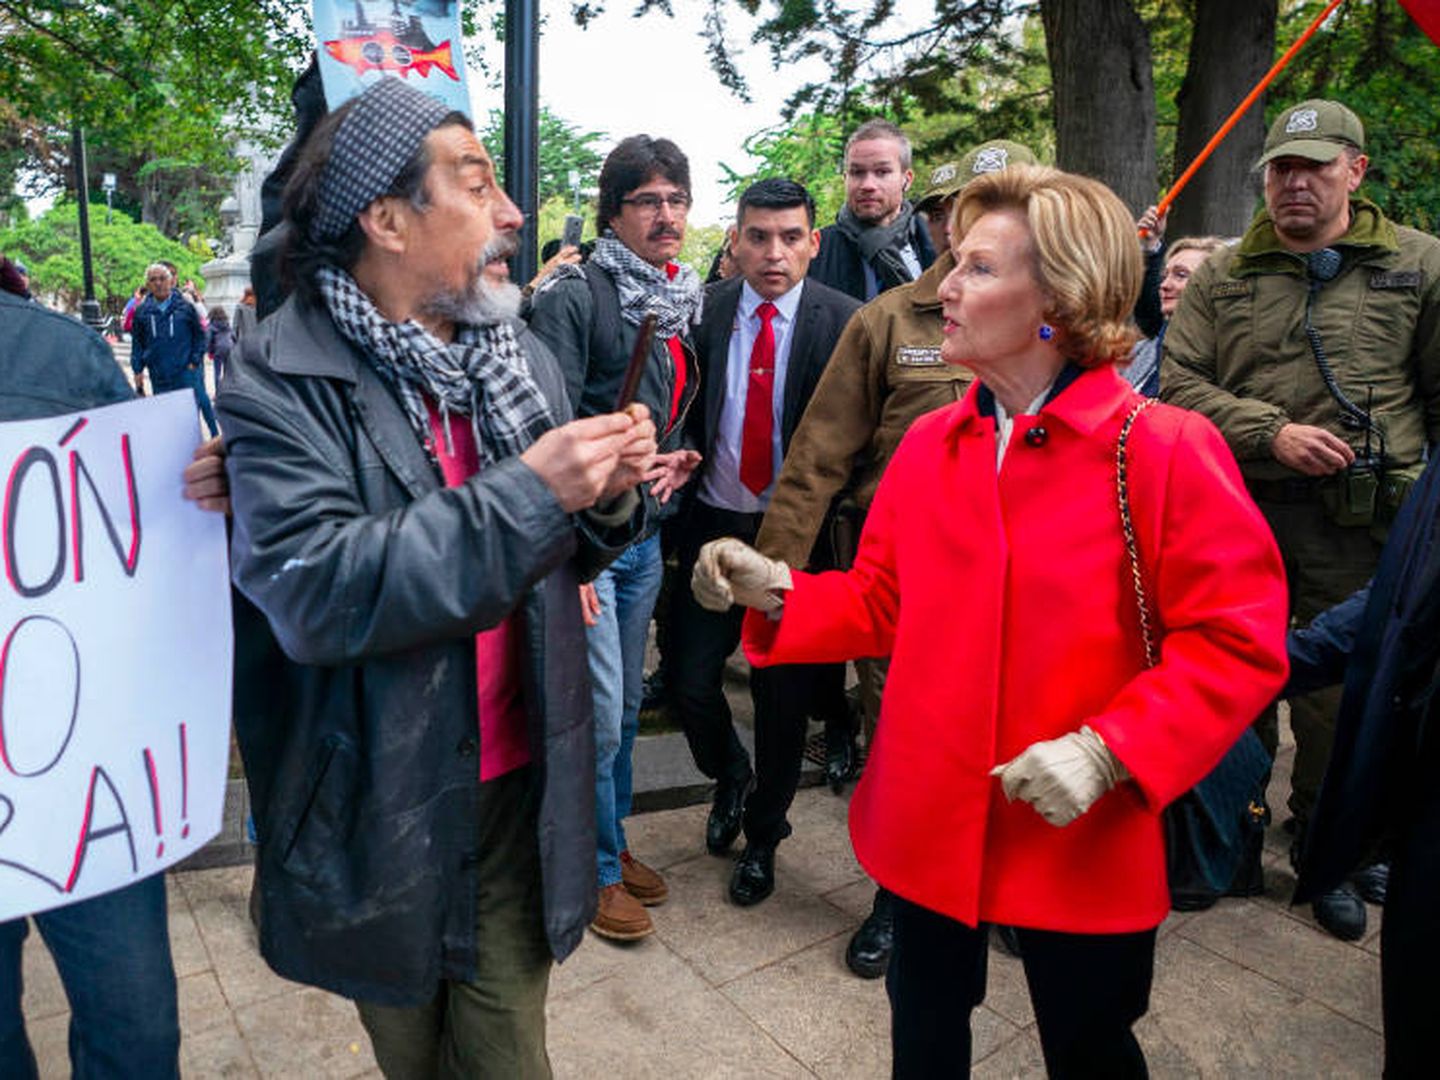 La reina Sonia de Noruega hablando con los manifestantes en Punta Arenas. (Heiko Junge / Casa Real Noruega)